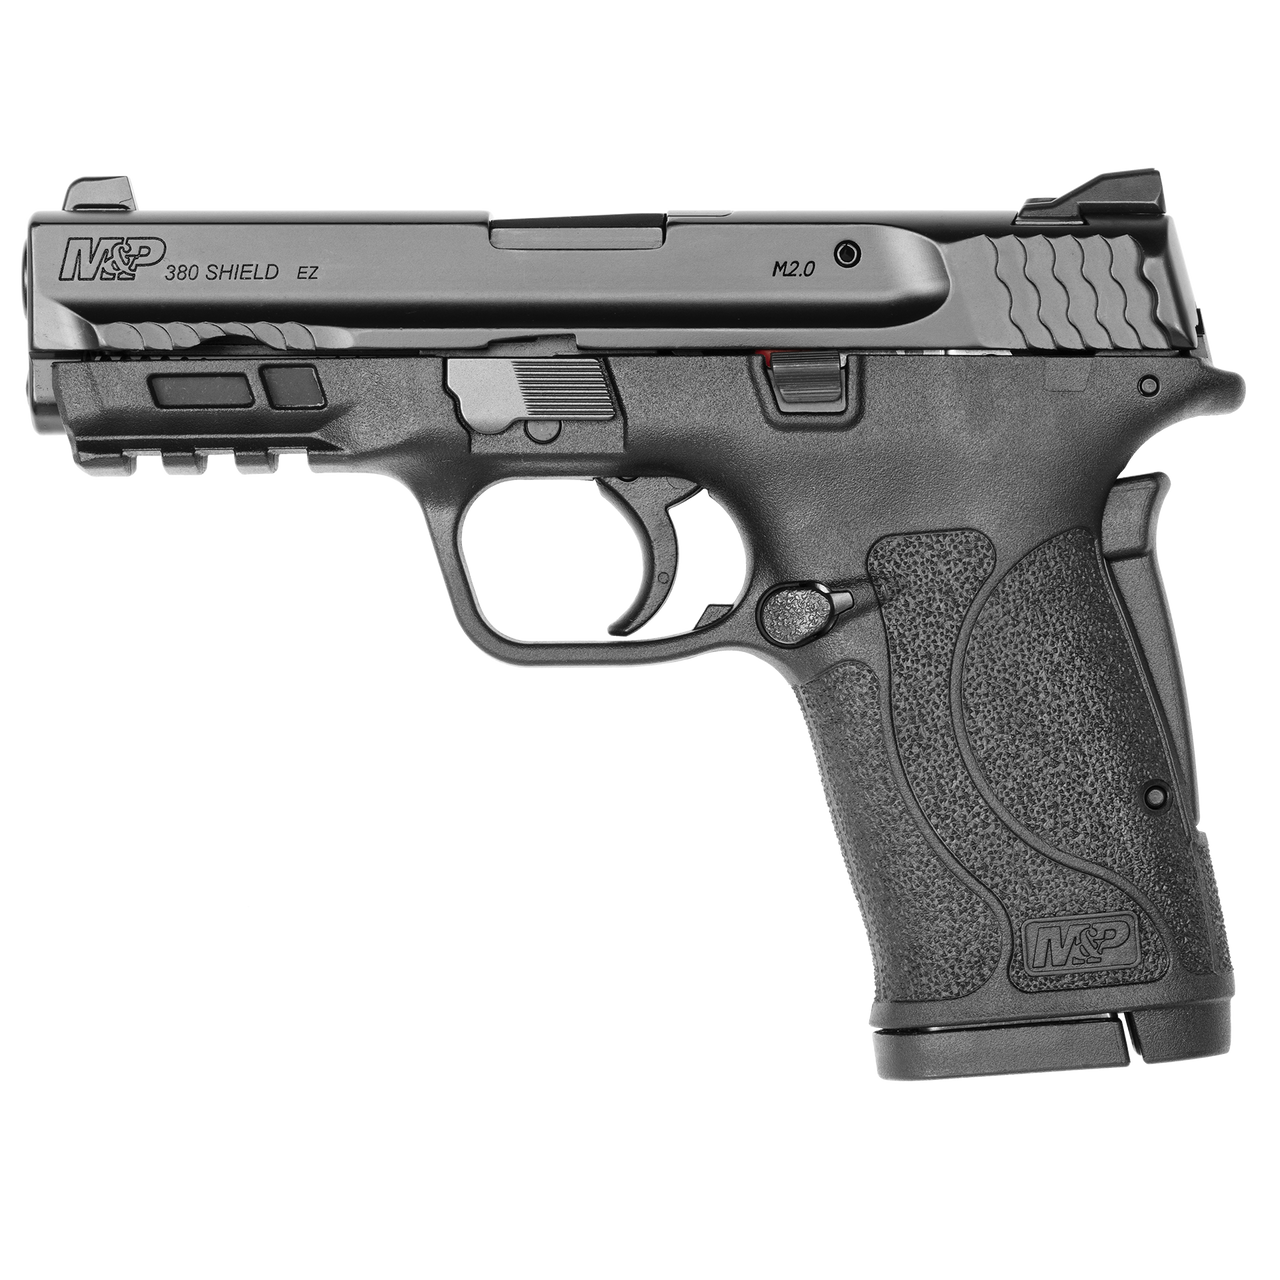 Buy Smith & Wesson M&P 380 Shield EZ Pistol Online